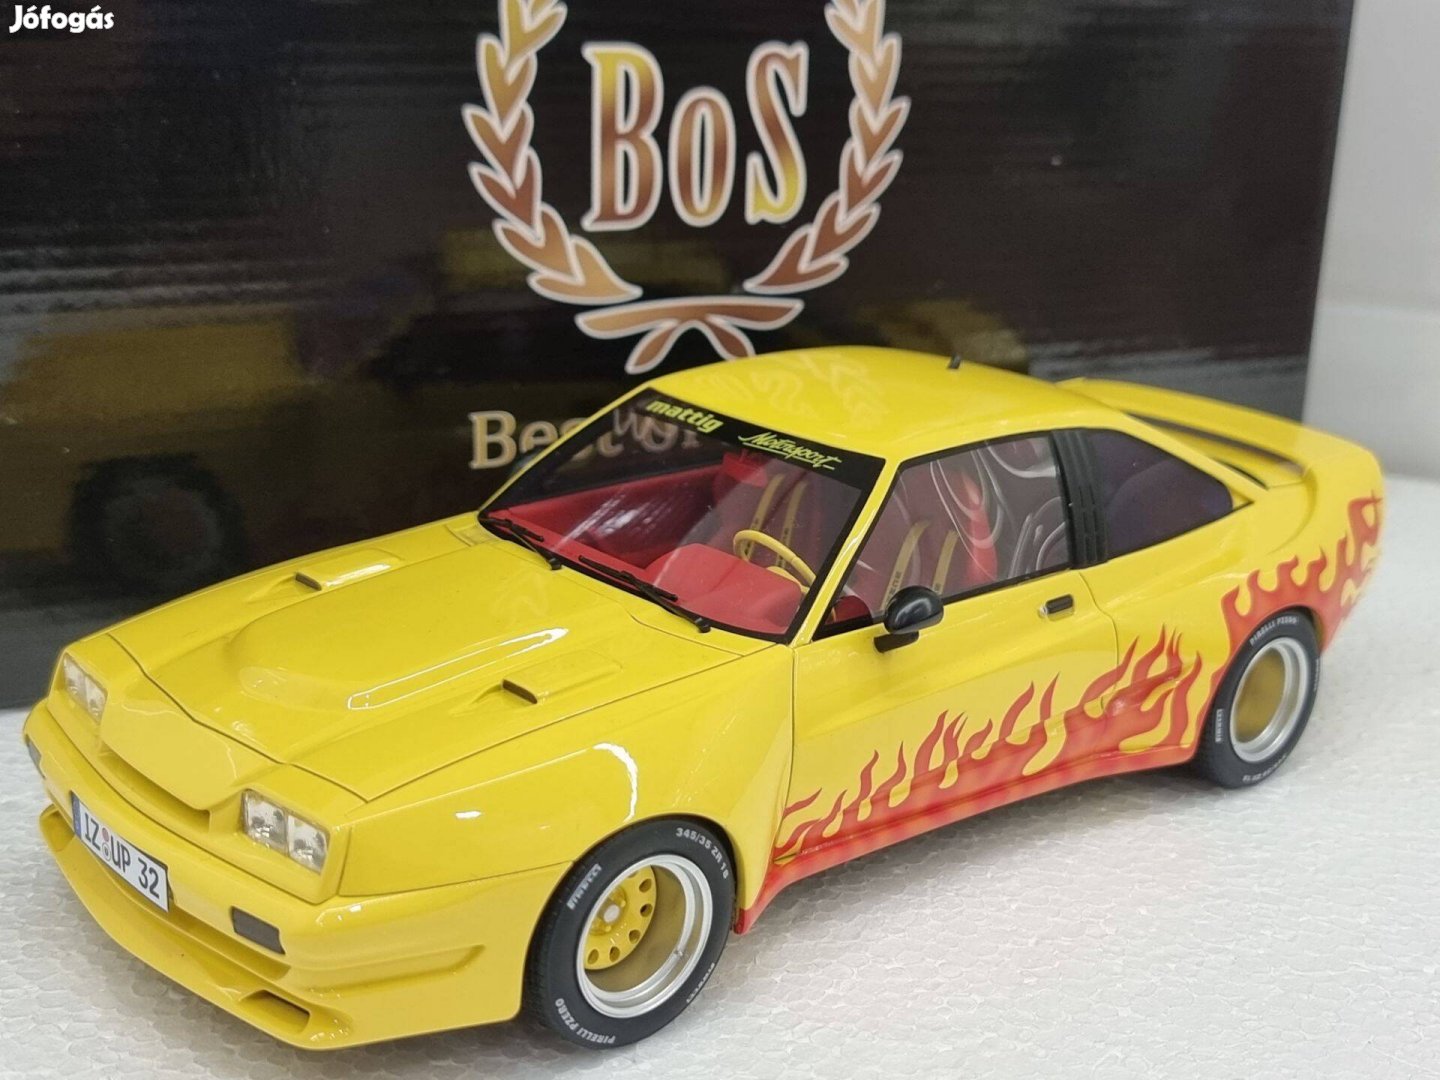 1/18 1:18 Opel Manta B Mattig Motorsport 1991, BOS models